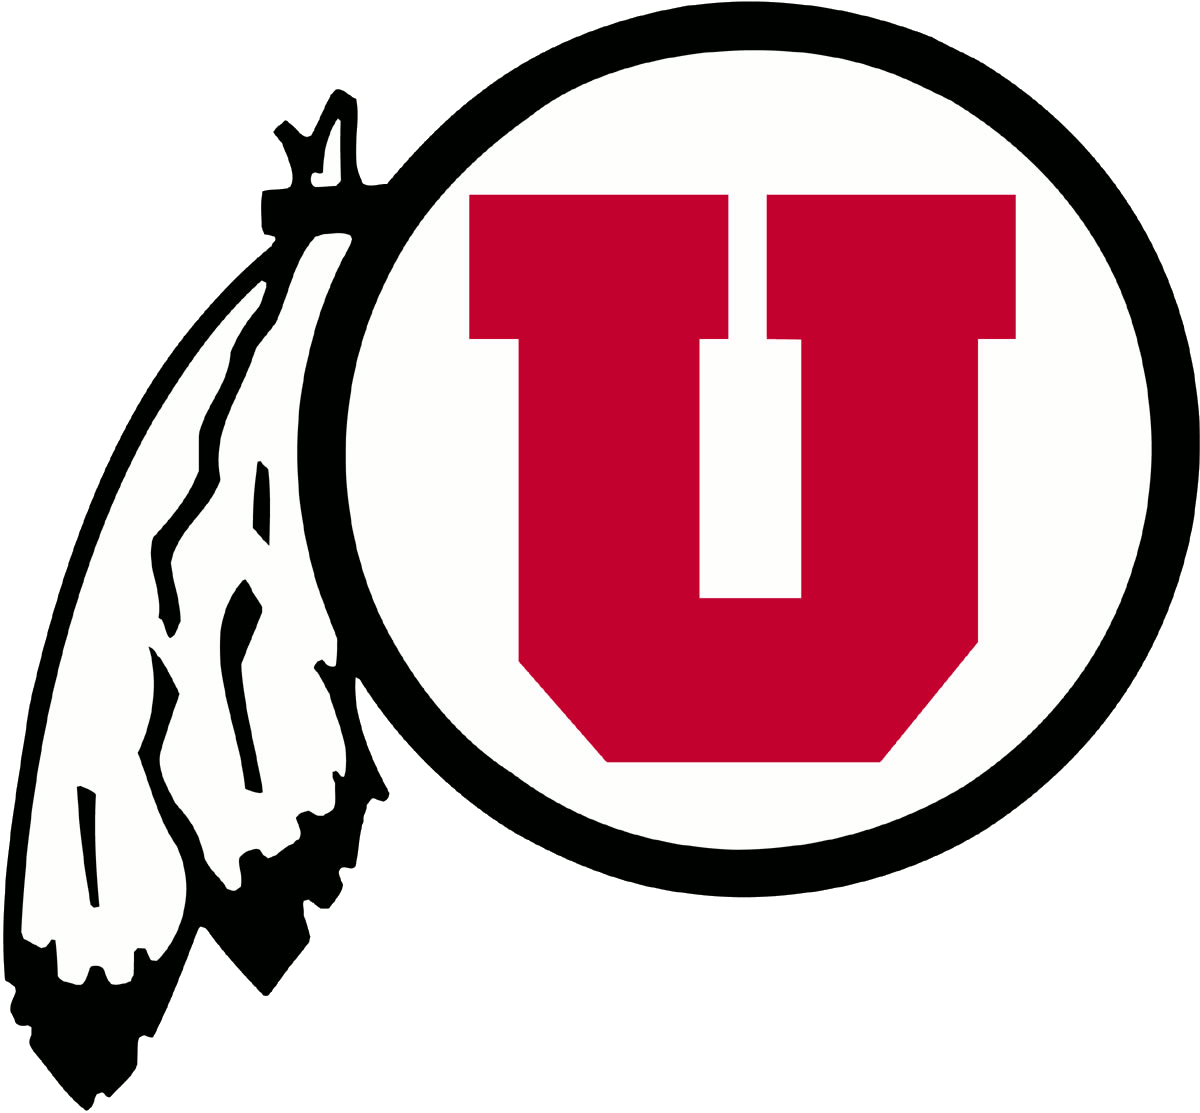 U of Utah Logo - Baldini, Arianna / University of Utah